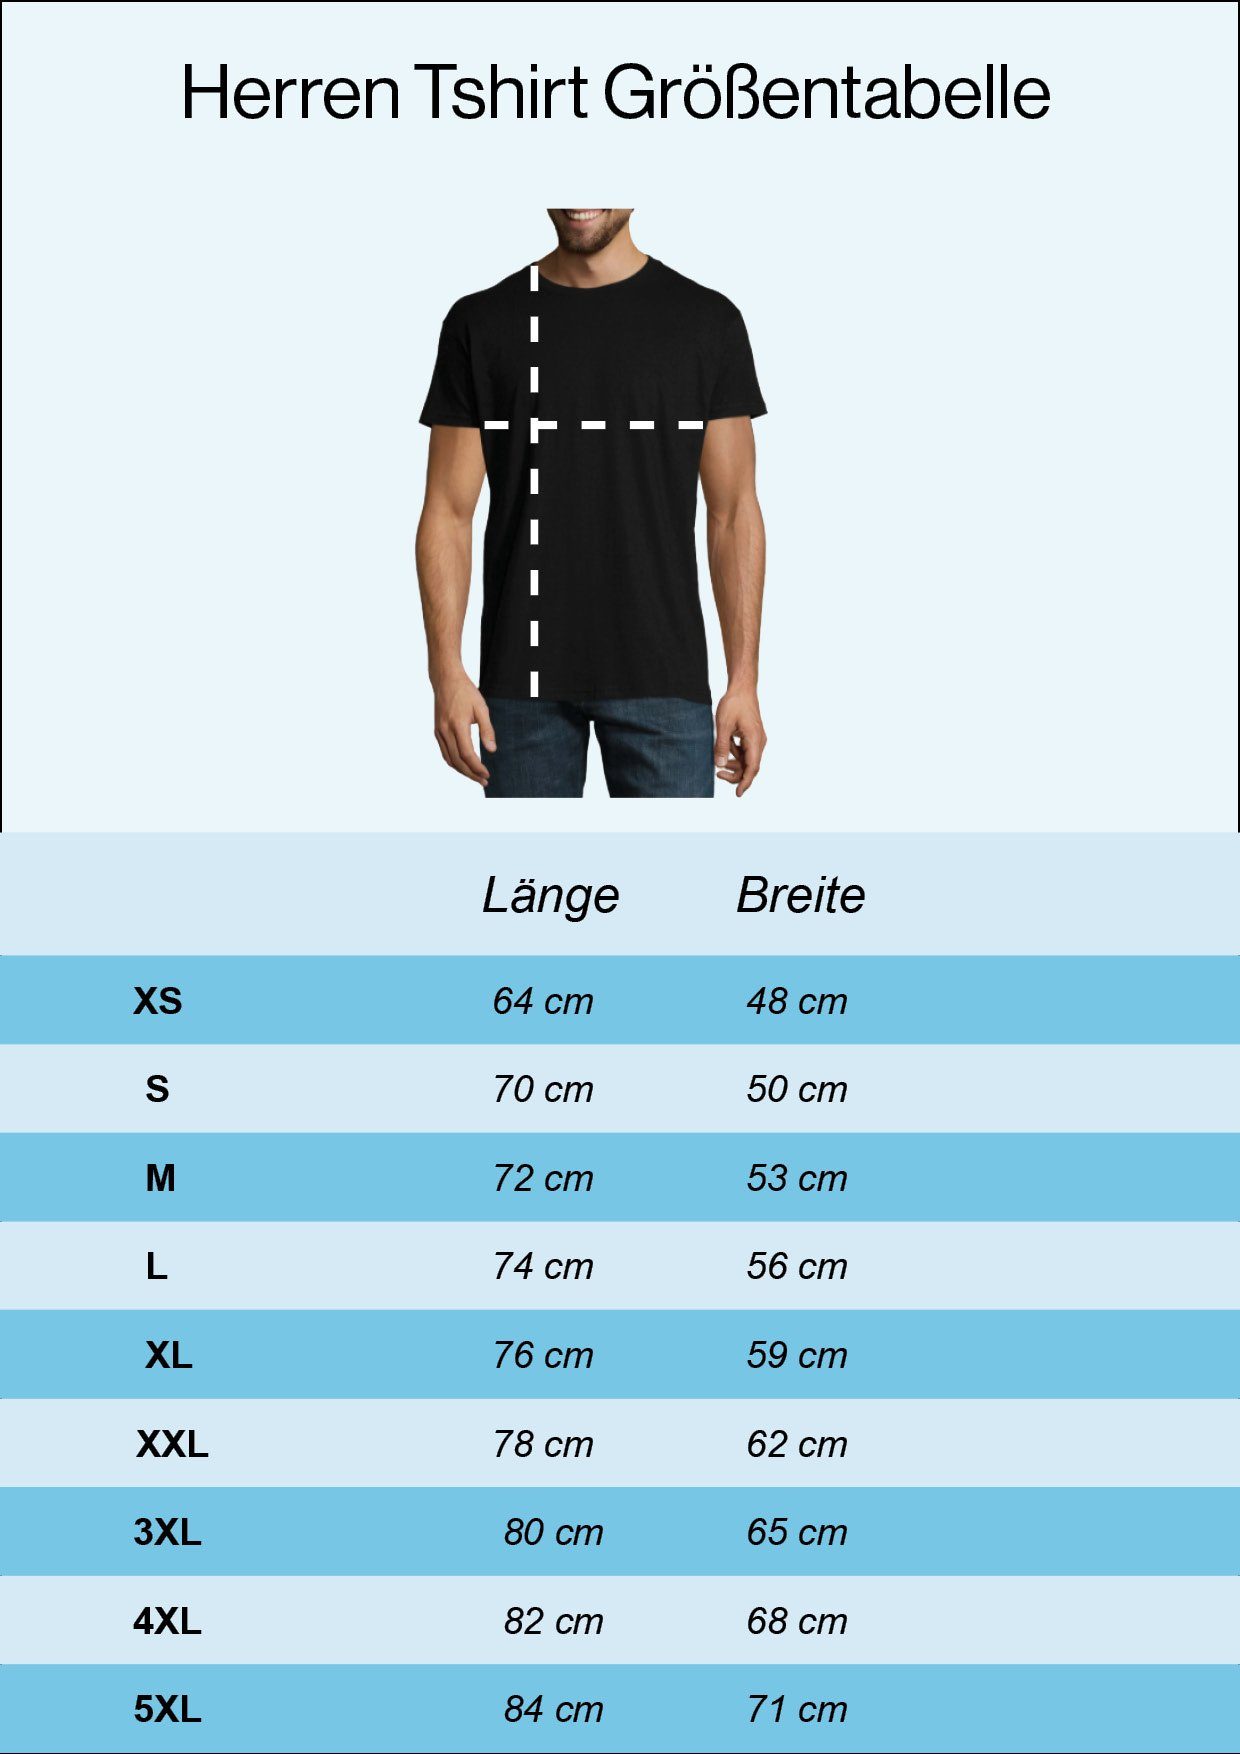 Shirt Spruch lustigem Youth Dachdecker Navyblau Frontprint Designz mit T-Shirt Herren